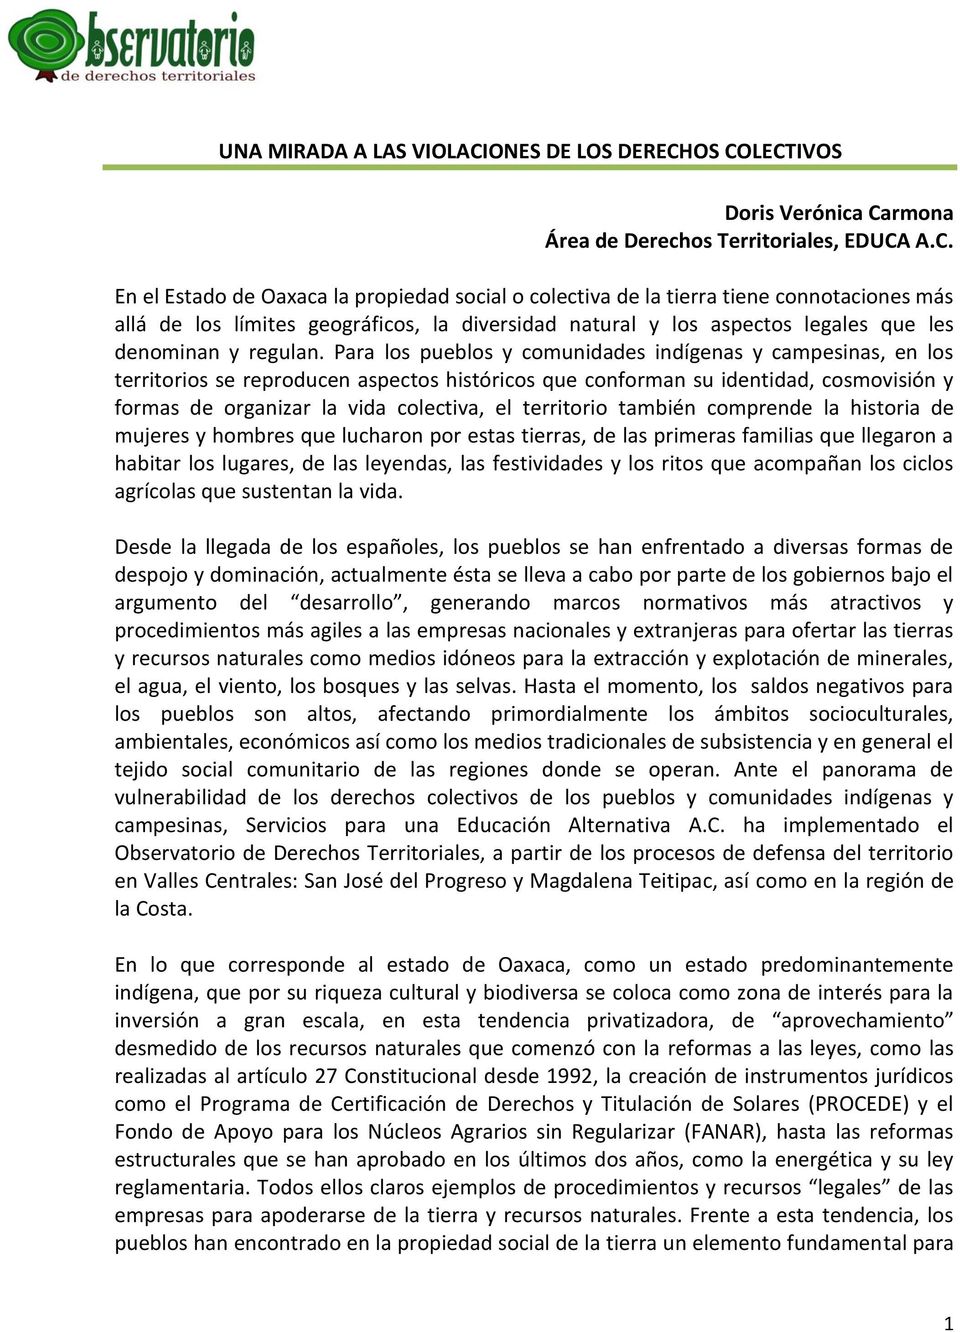 OS COLECTIVOS Doris Verónica Carmona Área de Derechos Territoriales, EDUCA A.C. En el Estado de Oaxaca la propiedad social o colectiva de la tierra tiene connotaciones más allá de los límites